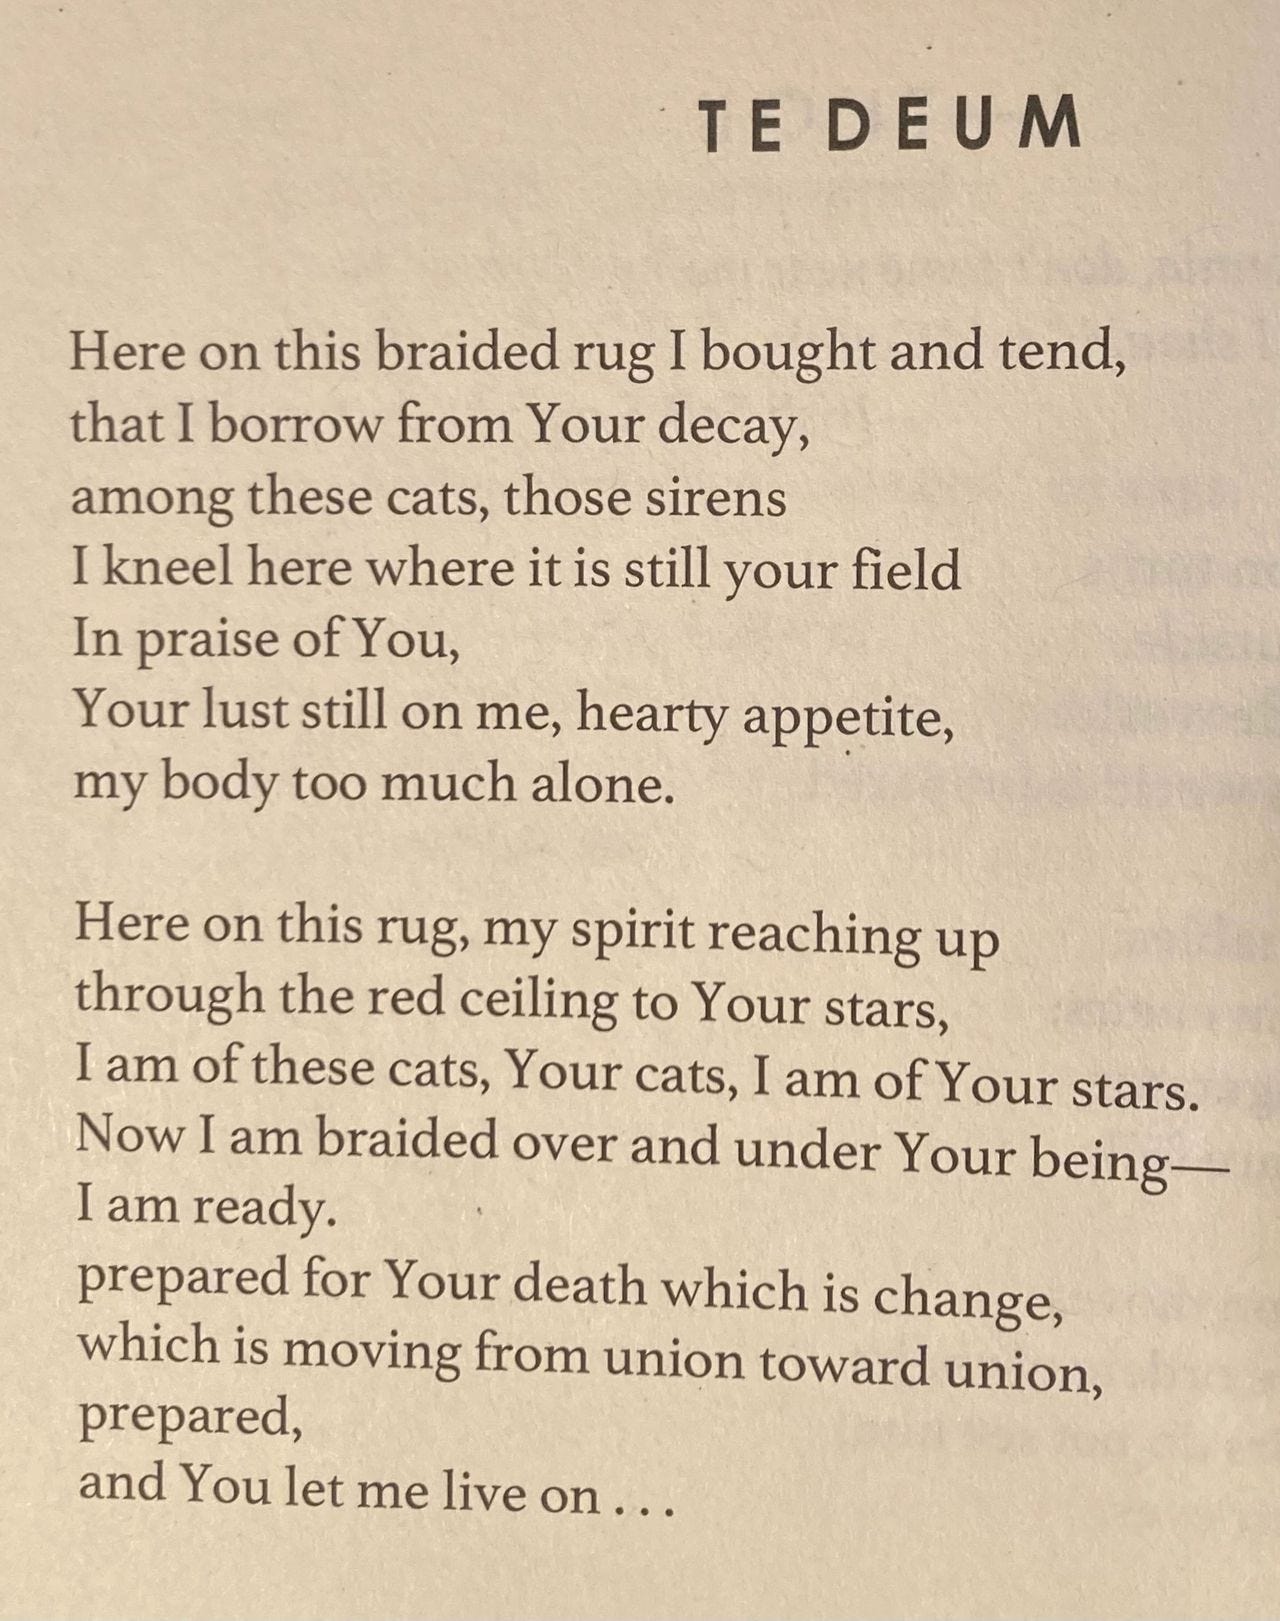 The poem "TE DEUM" by Laura Ulewicz